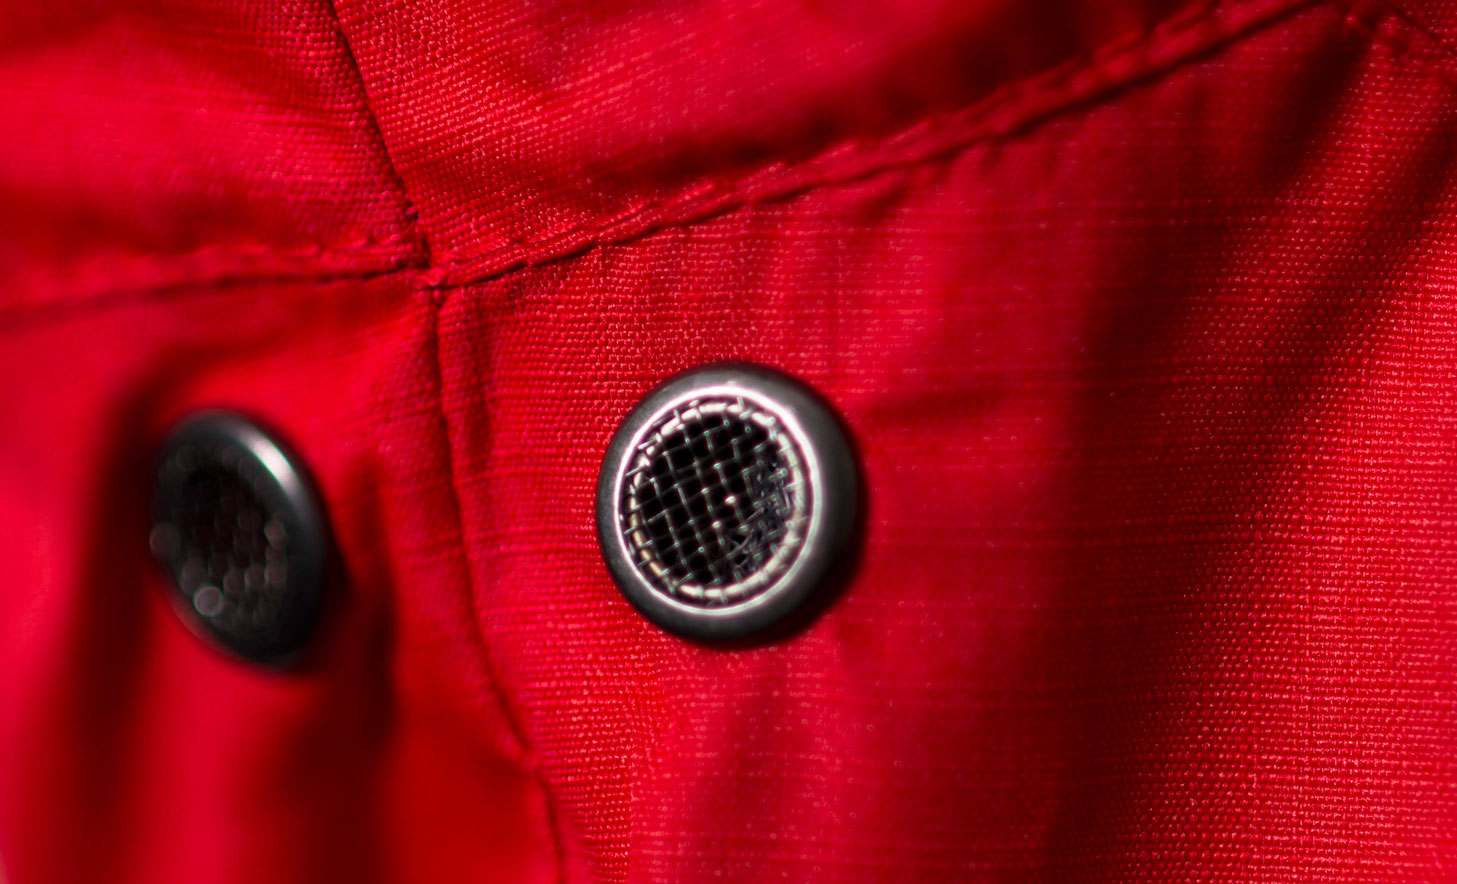 VISIJAX HIGHLIGHT Jacket in Red - Ventilation Holes